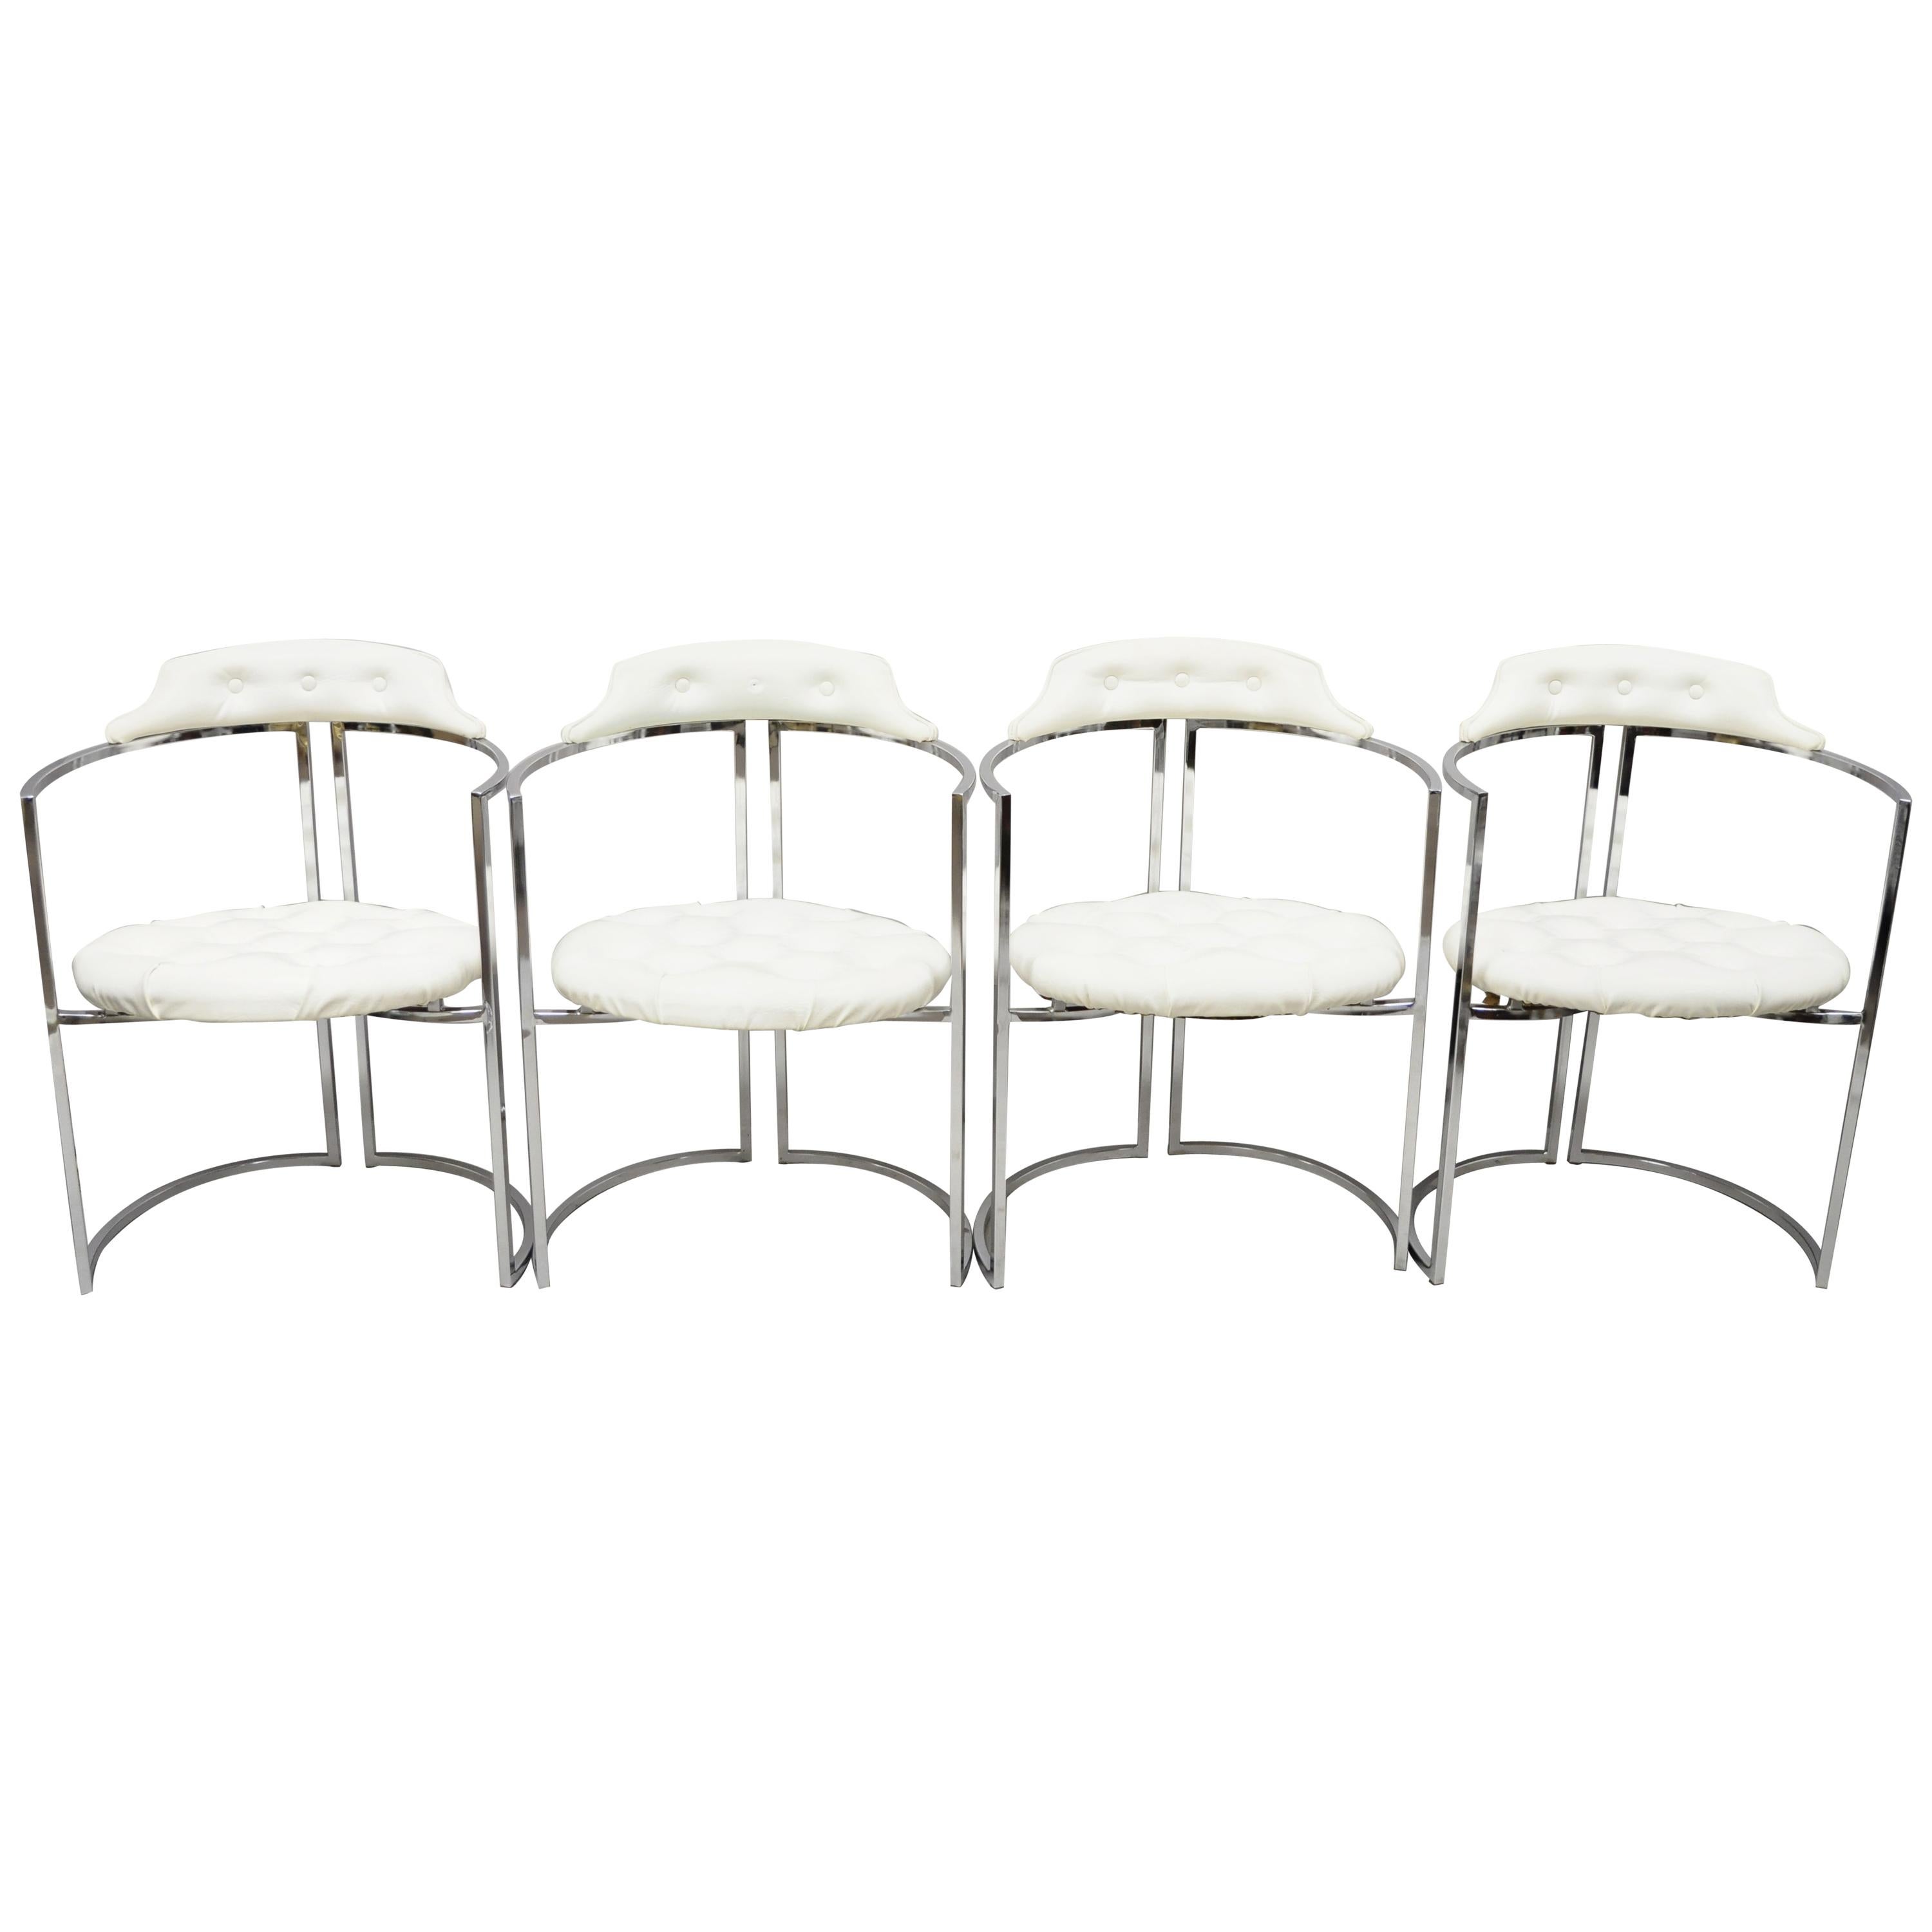 Chromcraft Midcentury Chrome Frame Barrel Back White Vinyl Chairs, Set of 4